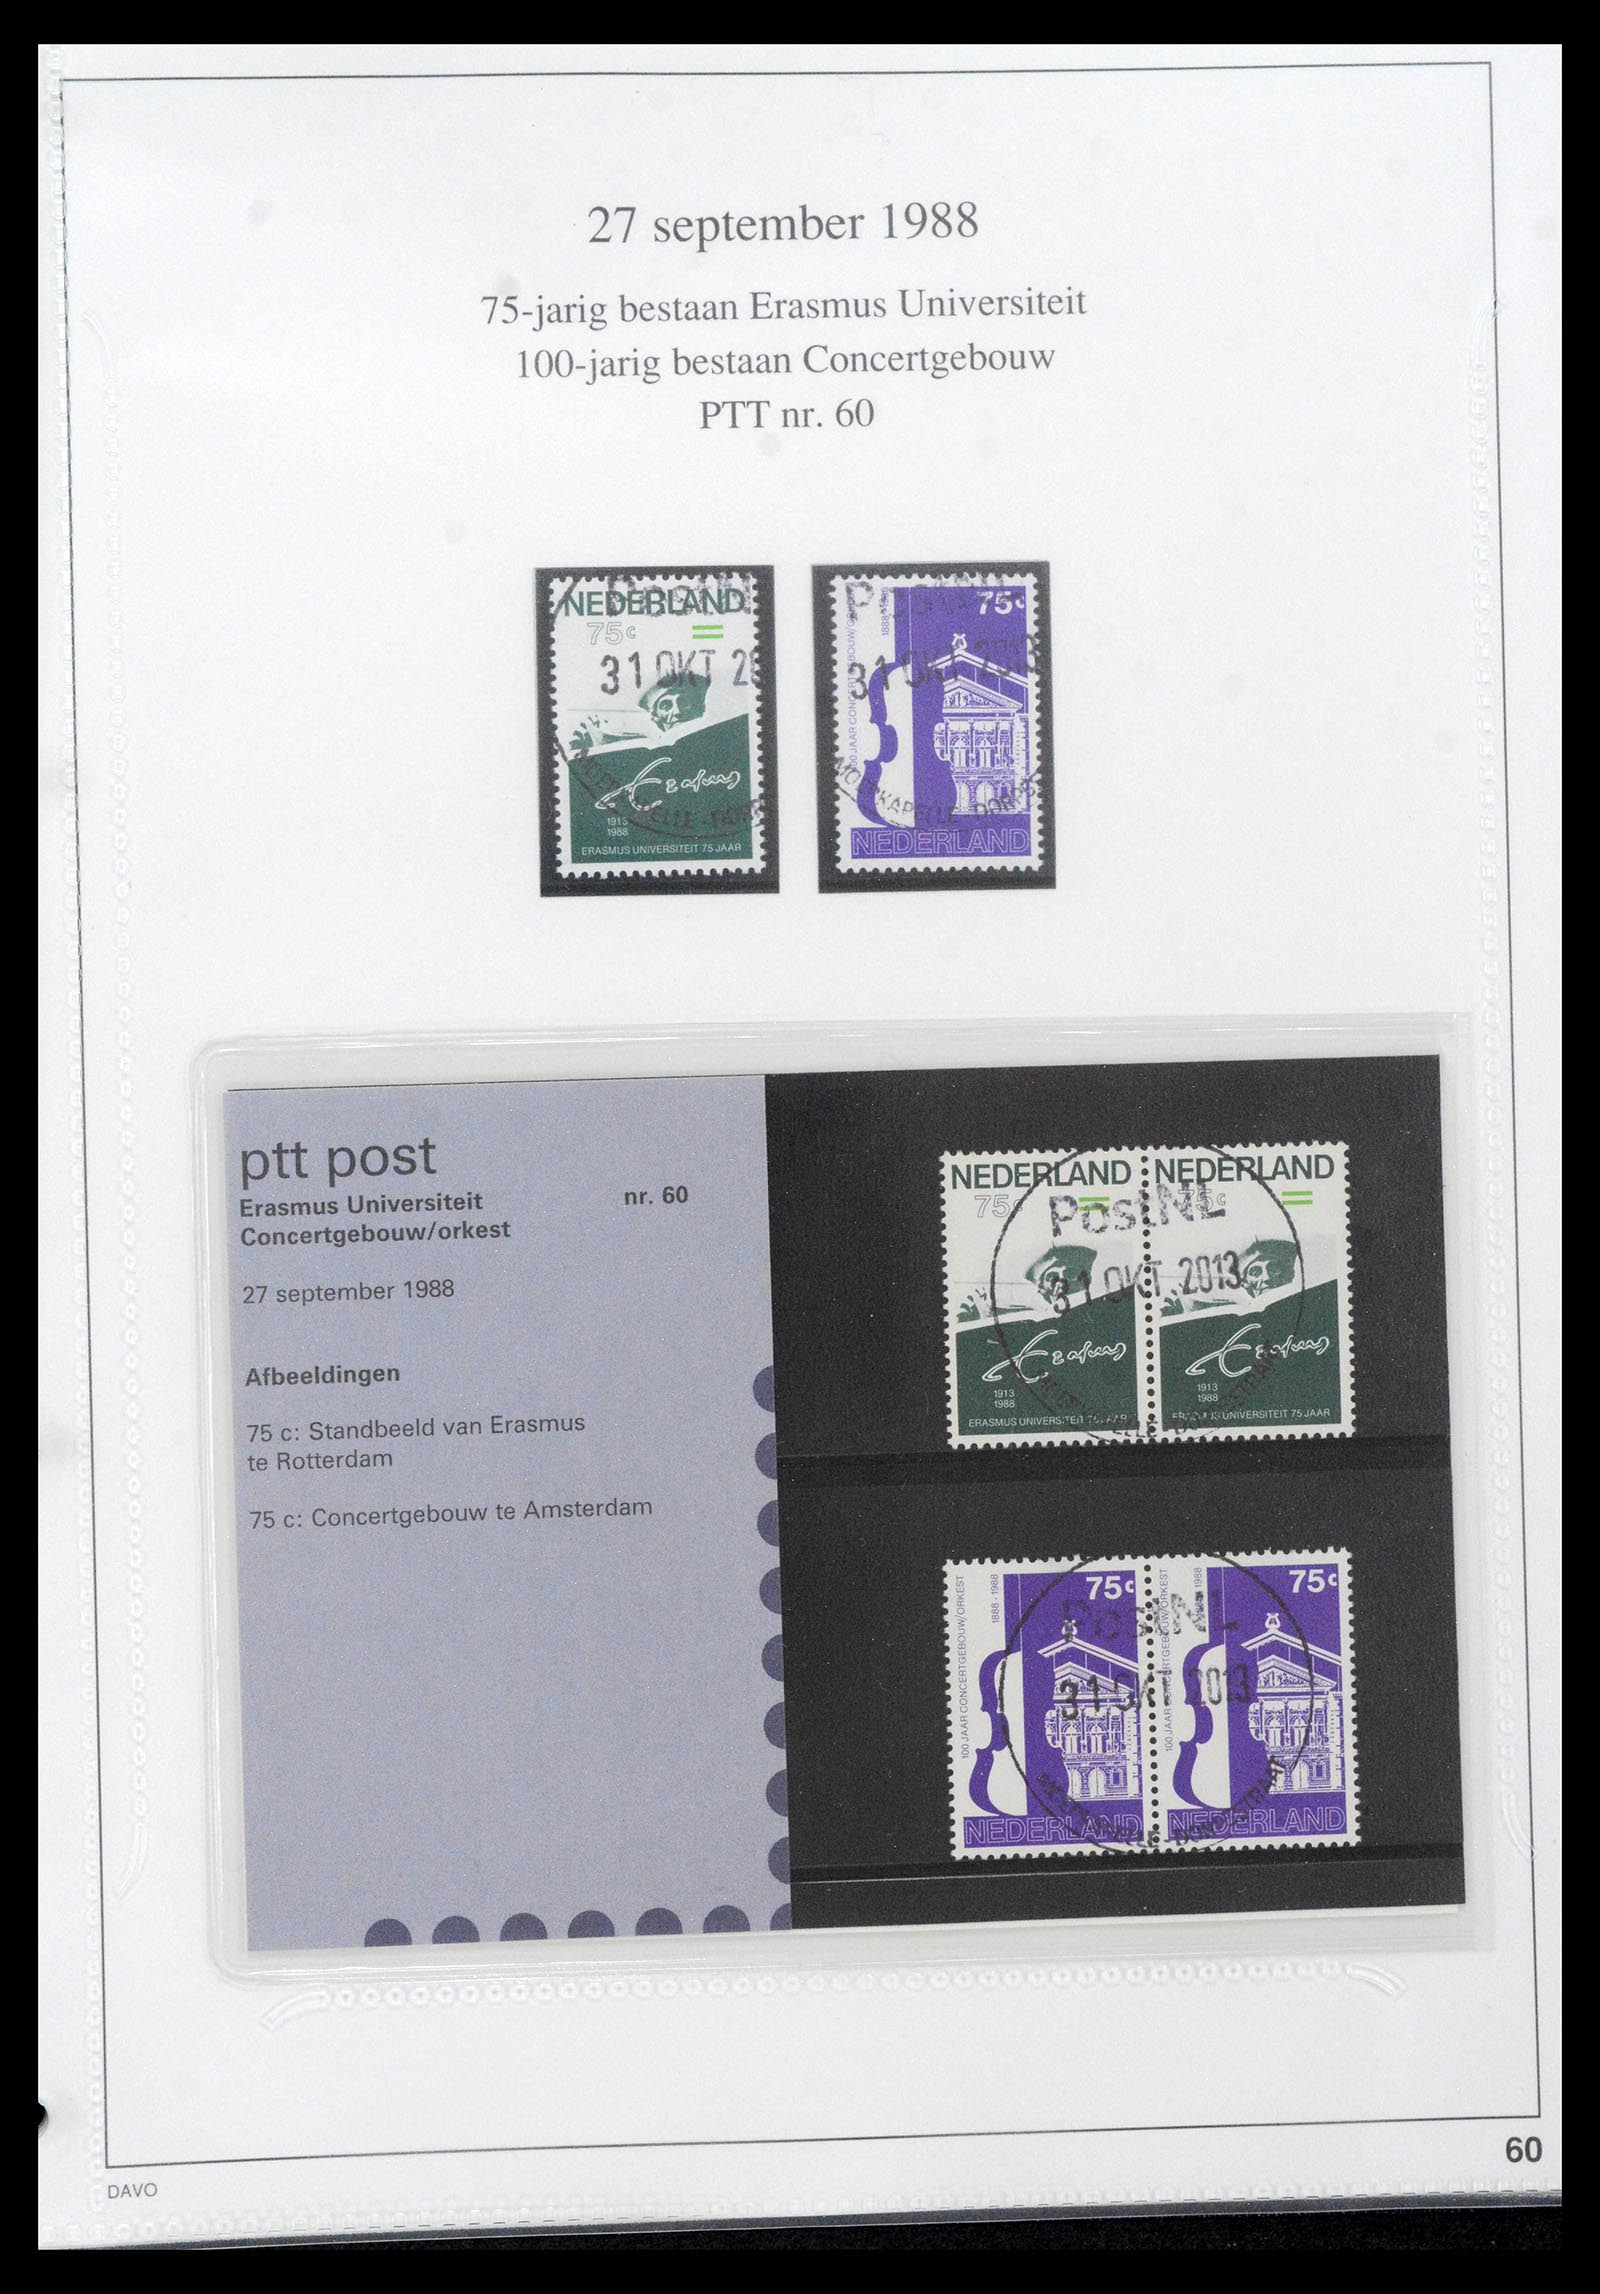 39121 0060 - Stamp collection 39121 Netherlands presentationpacks 1982-2001.